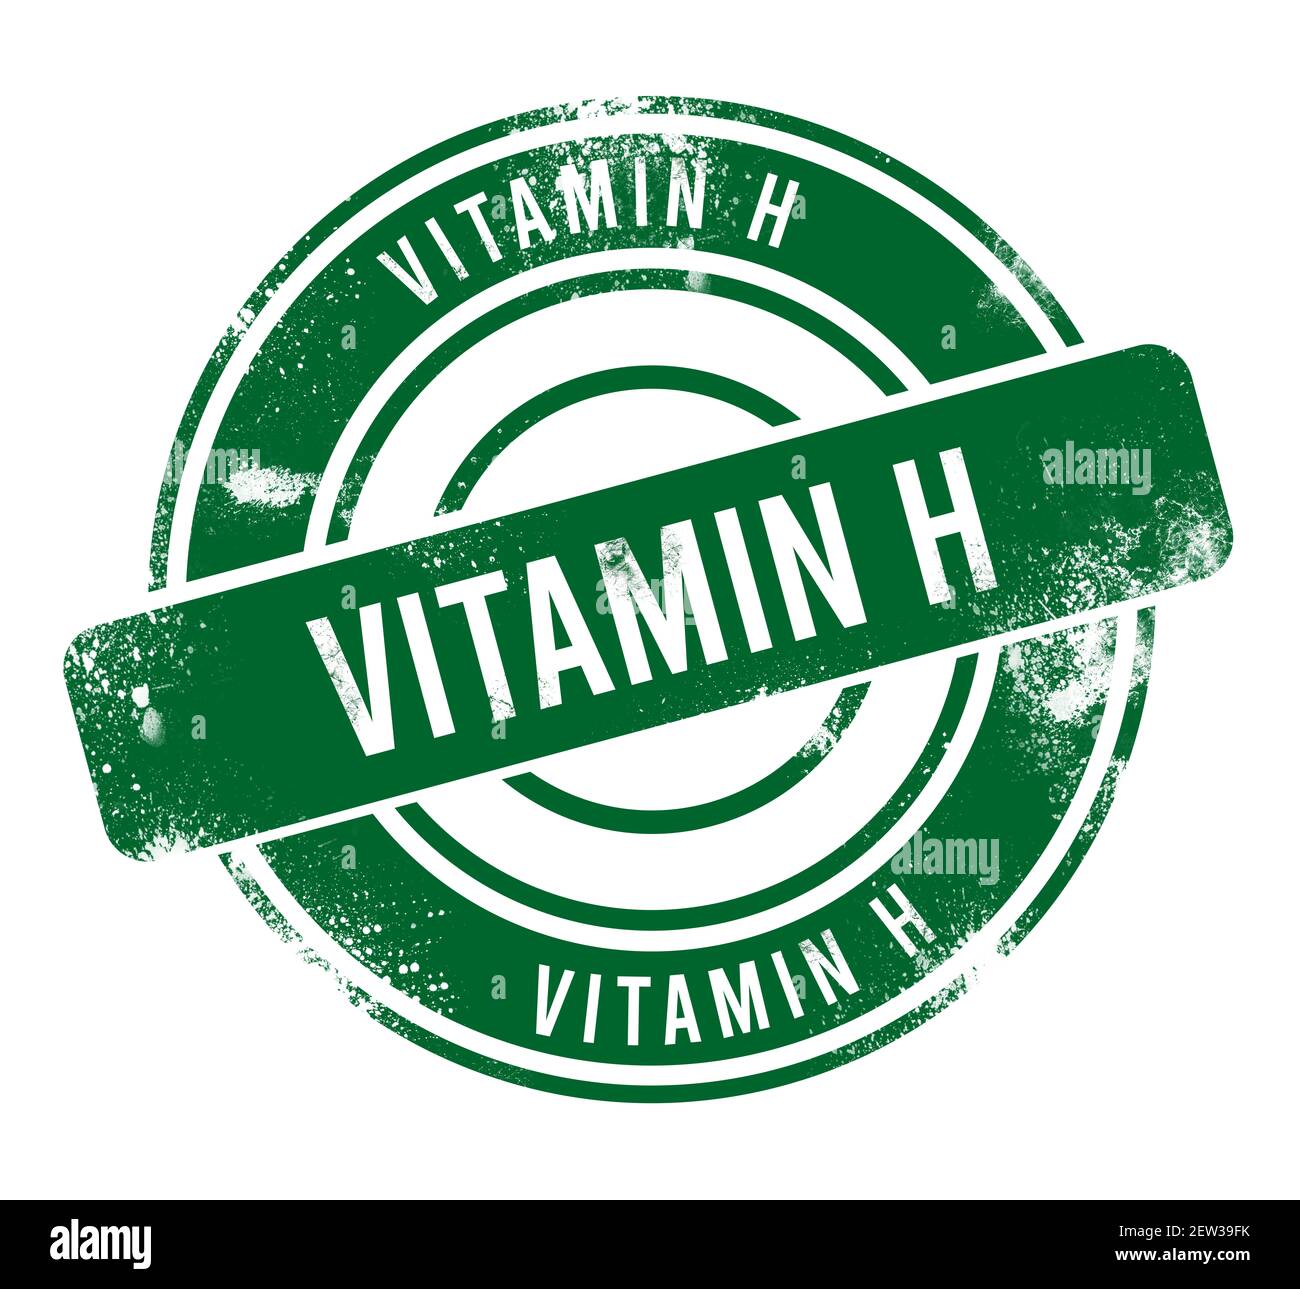 Vitamin H - green round grunge button, stamp Stock Photo